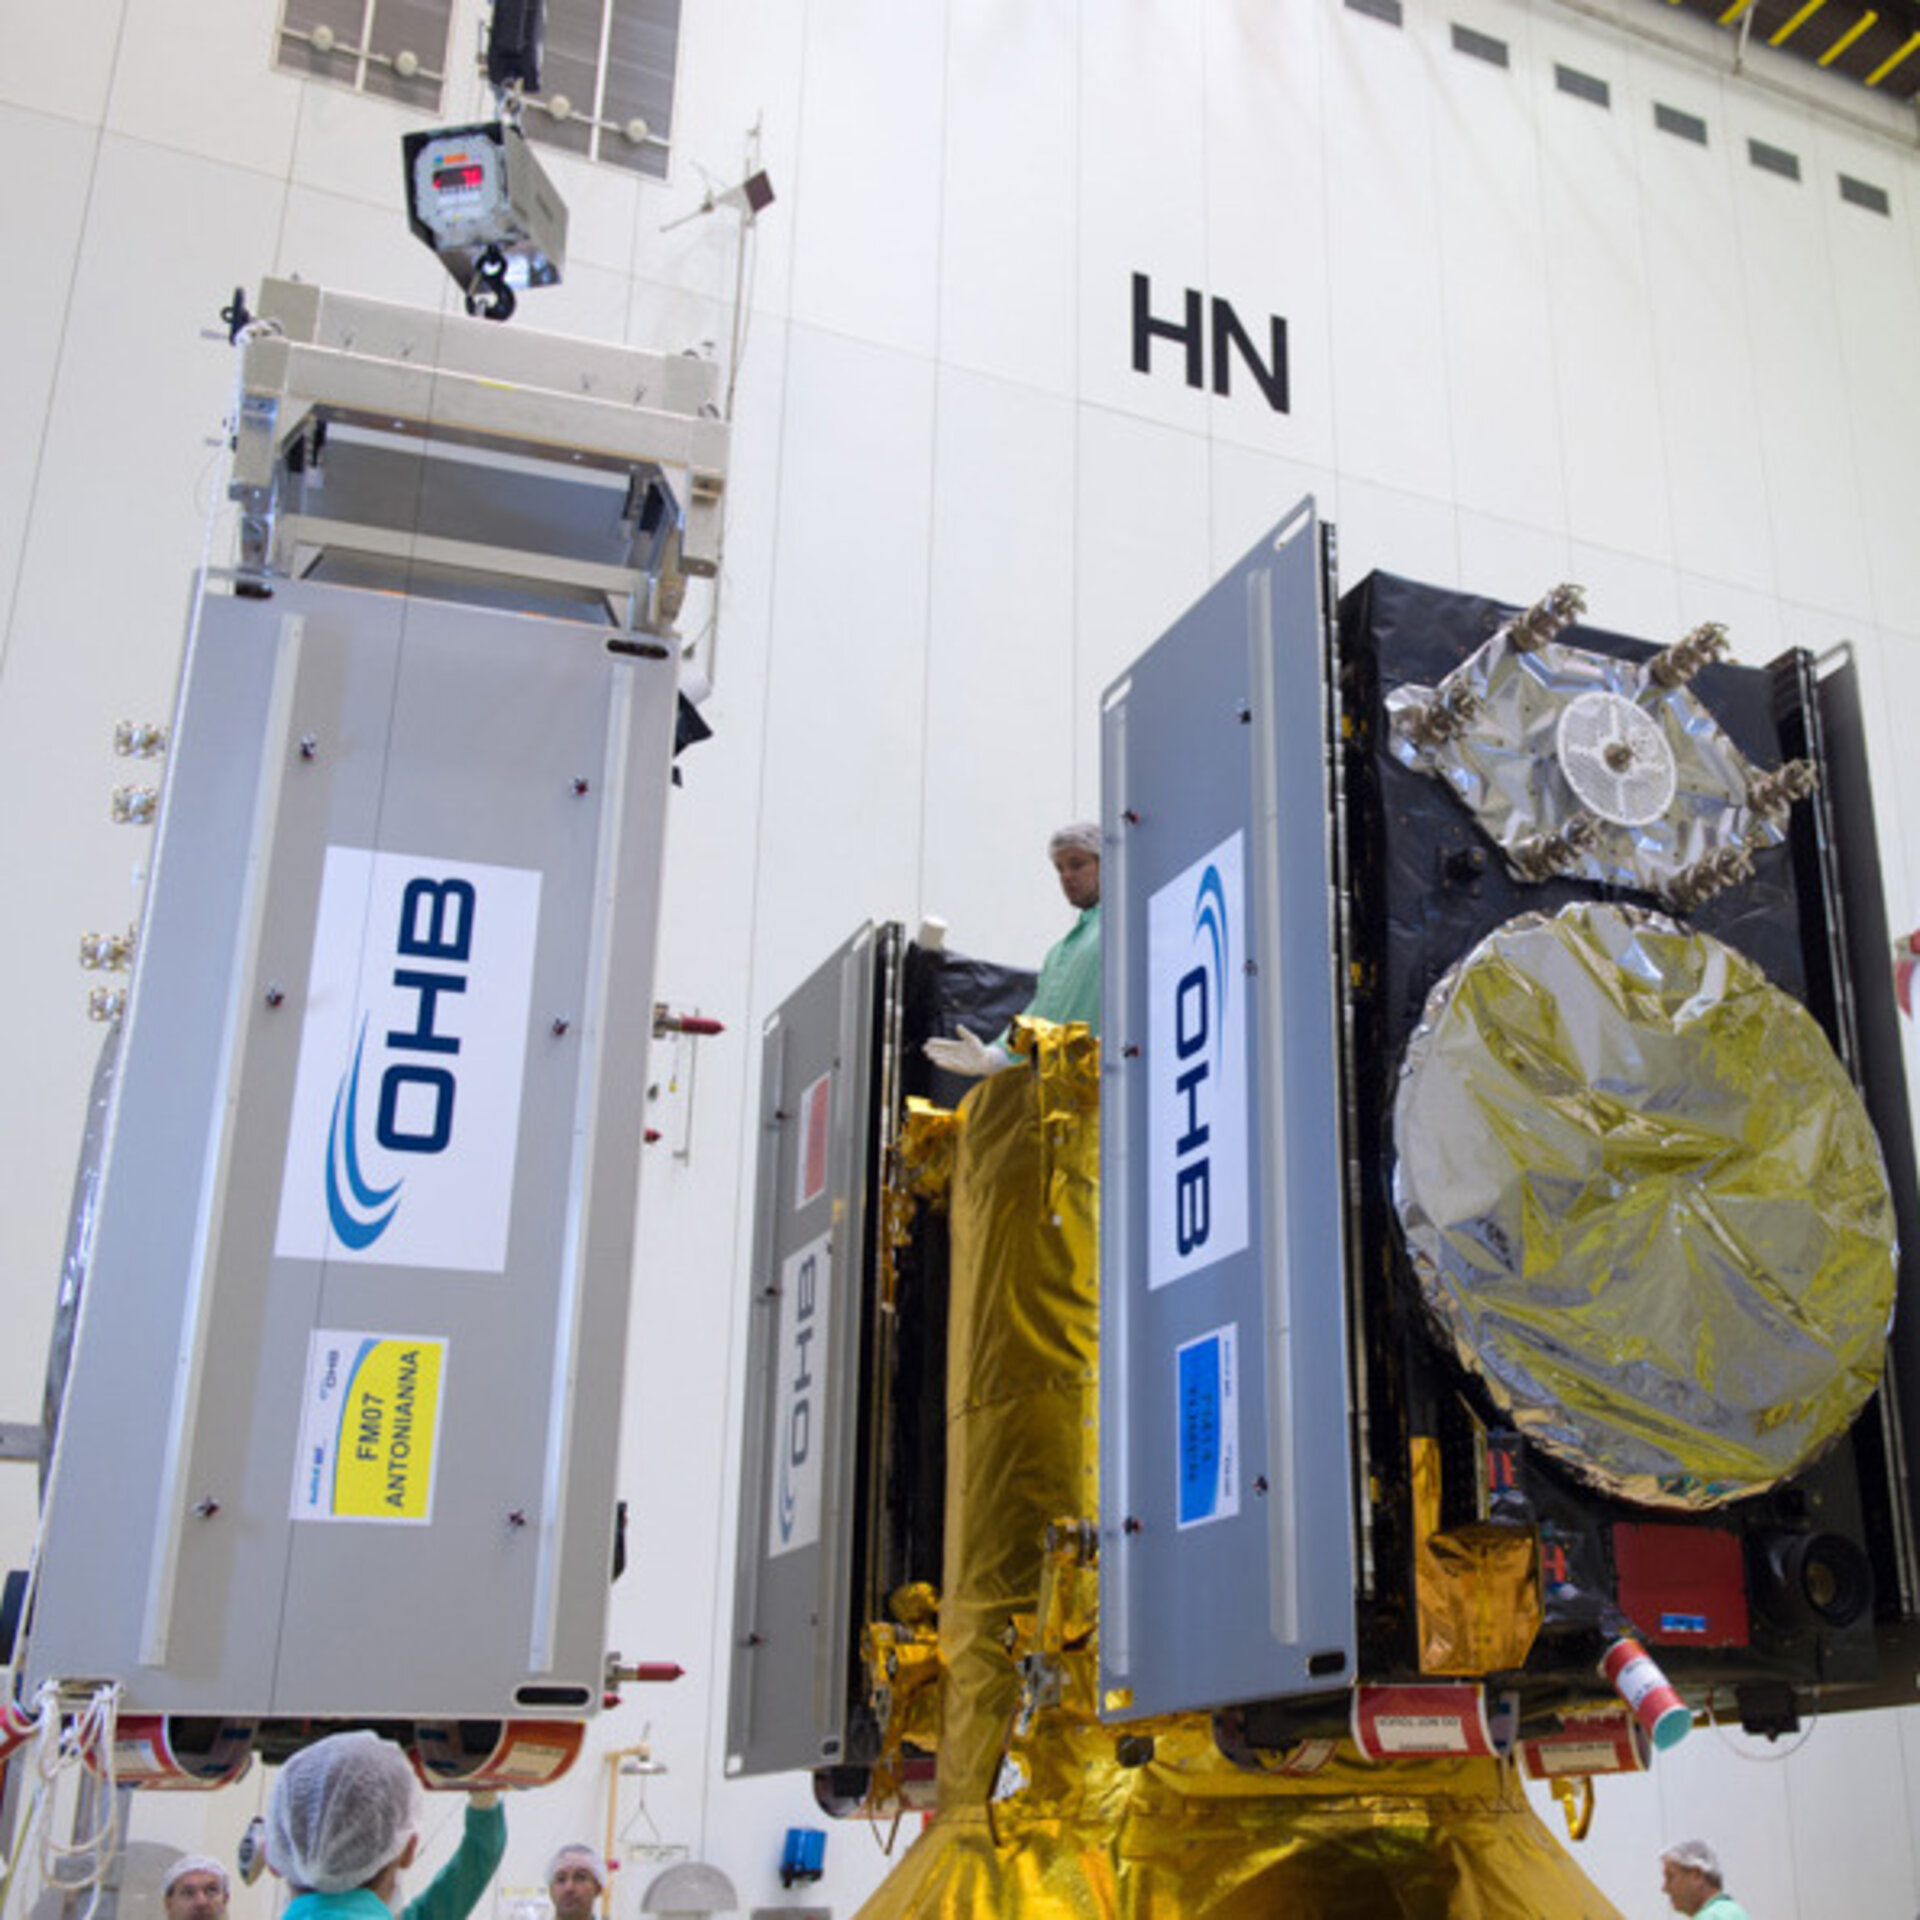 Galileo satellites fixed to dispenser